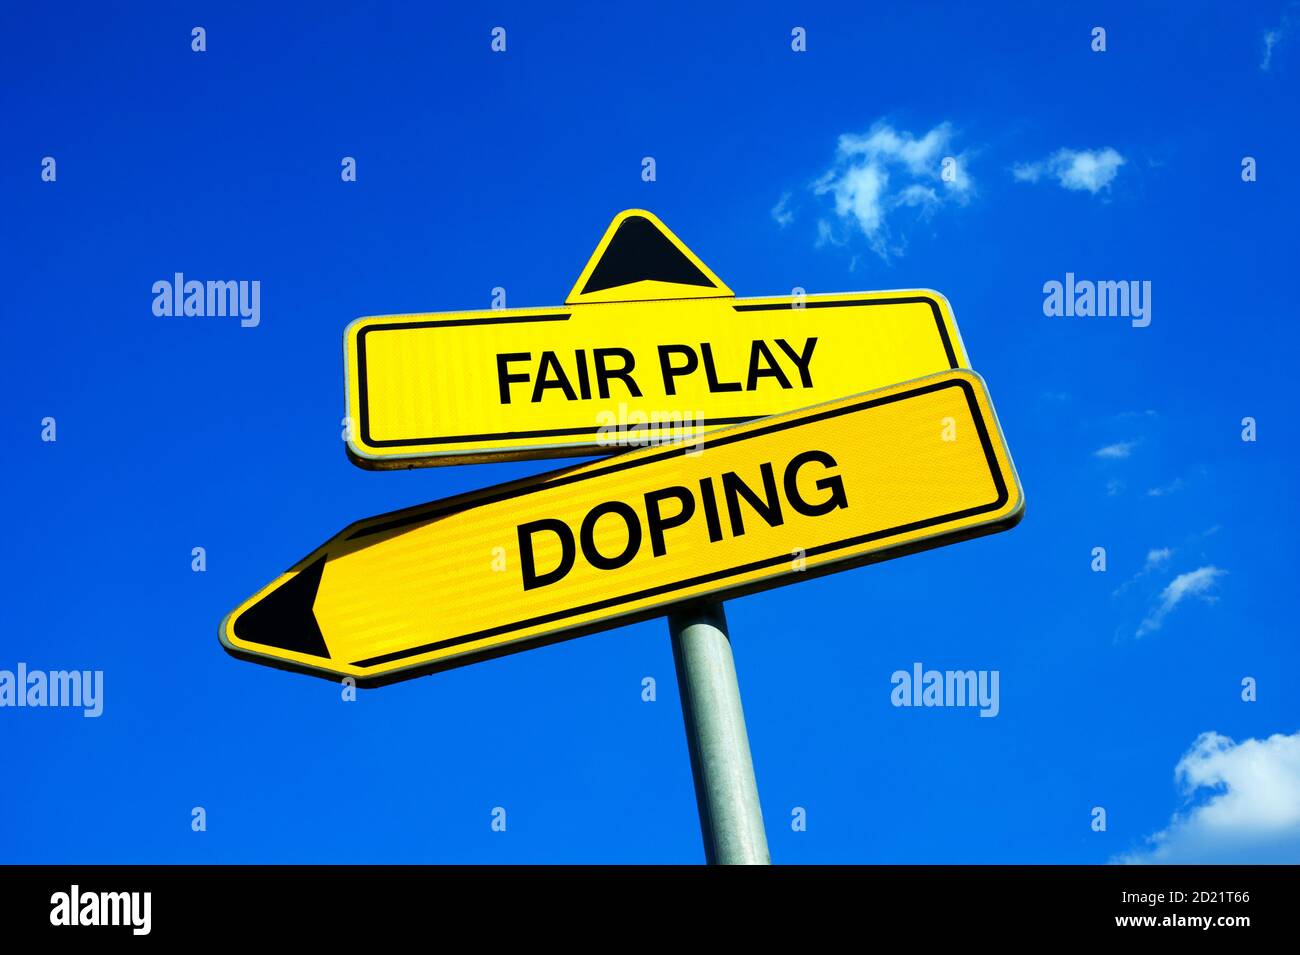 Fair Play vs doping - segnale di traffico con due opzioni - equità degli sportivi durante le competizioni sportive o l'uso illegale di droghe e stimola ad enha Foto Stock